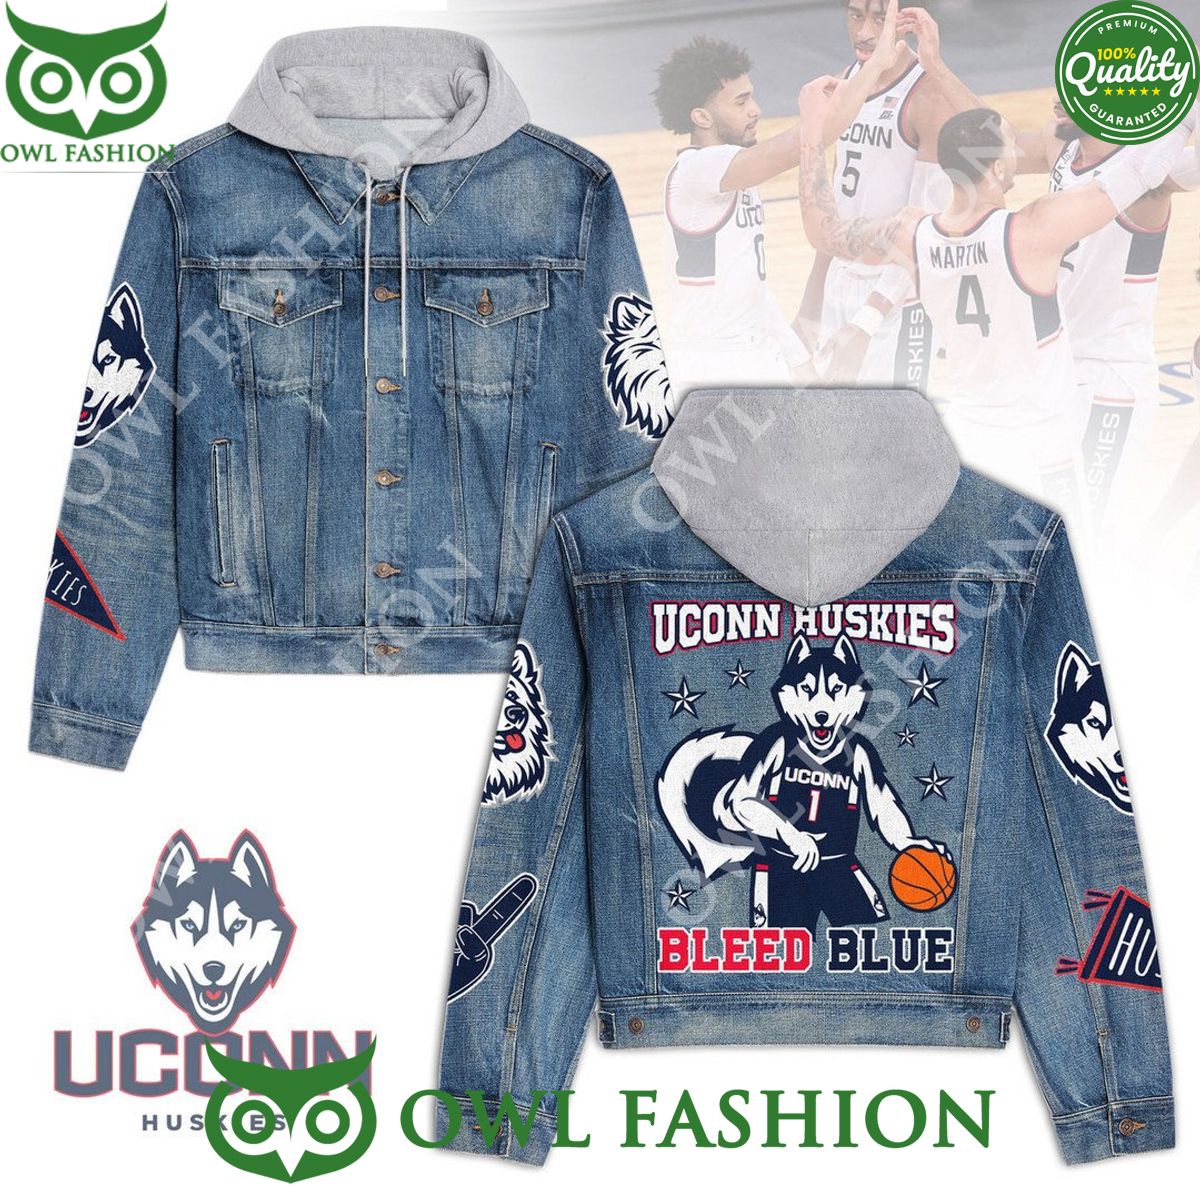 Uconn Huskies Bleed Blue Basketball NCAA 2d denim jacket hoodie